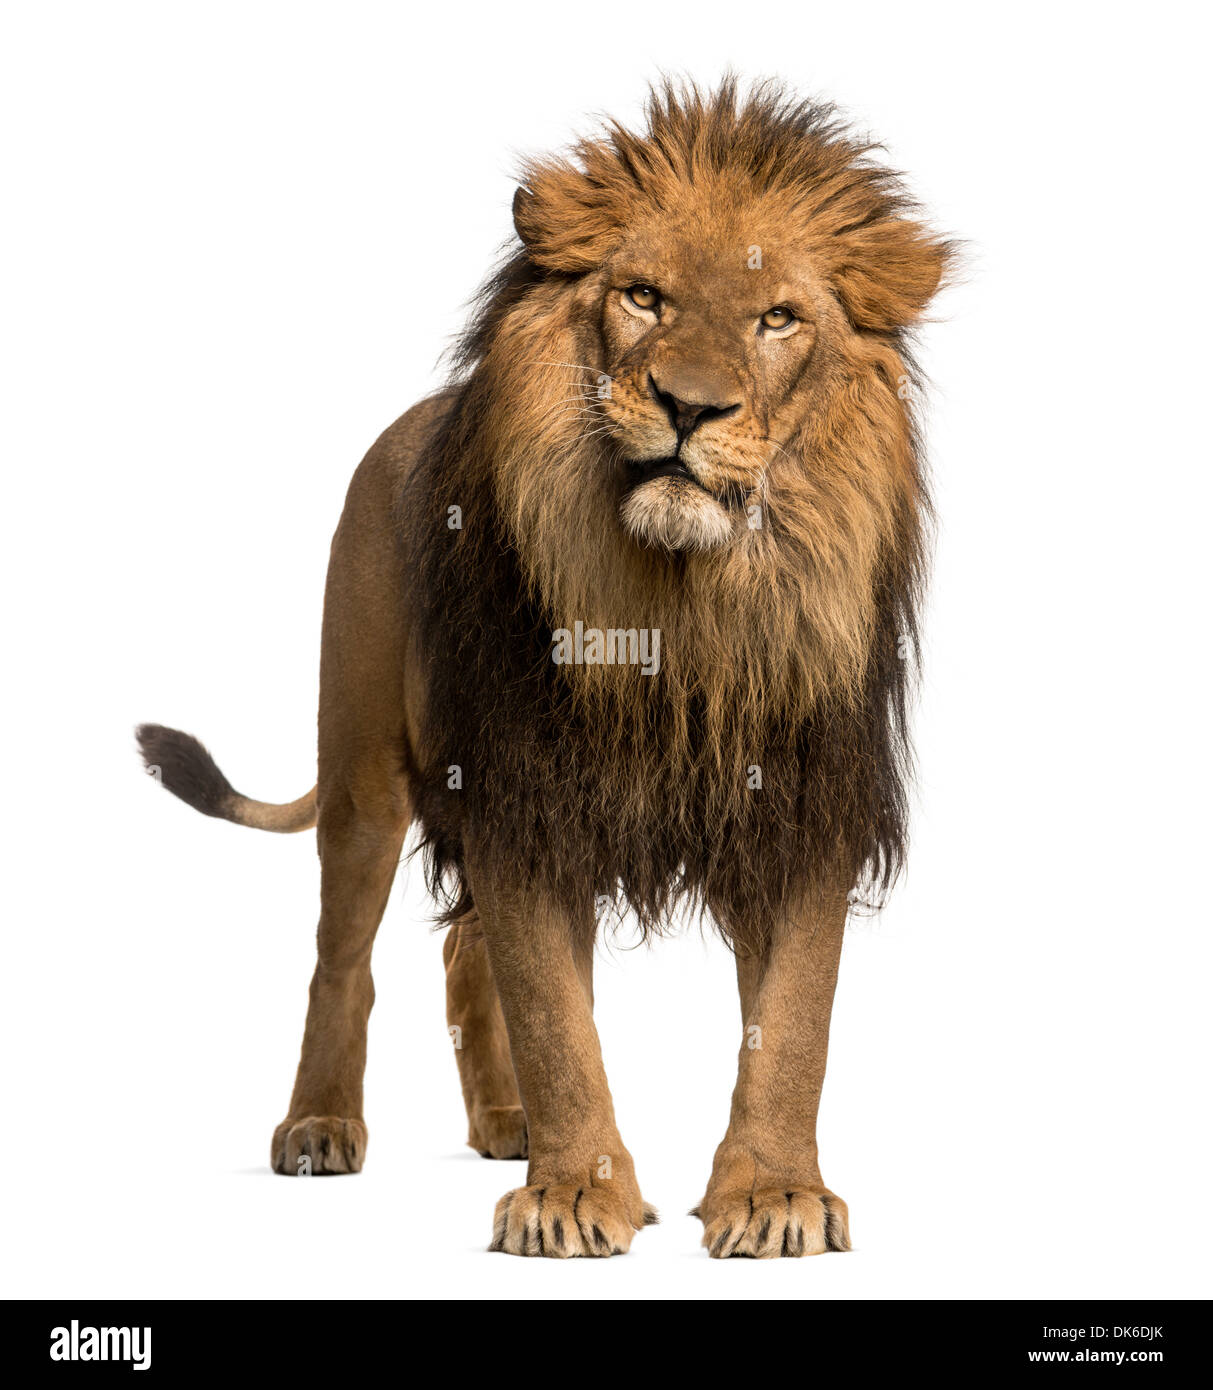 Lion debout, regardant la caméra, Panthera leo, 10 ans, contre fond blanc Banque D'Images